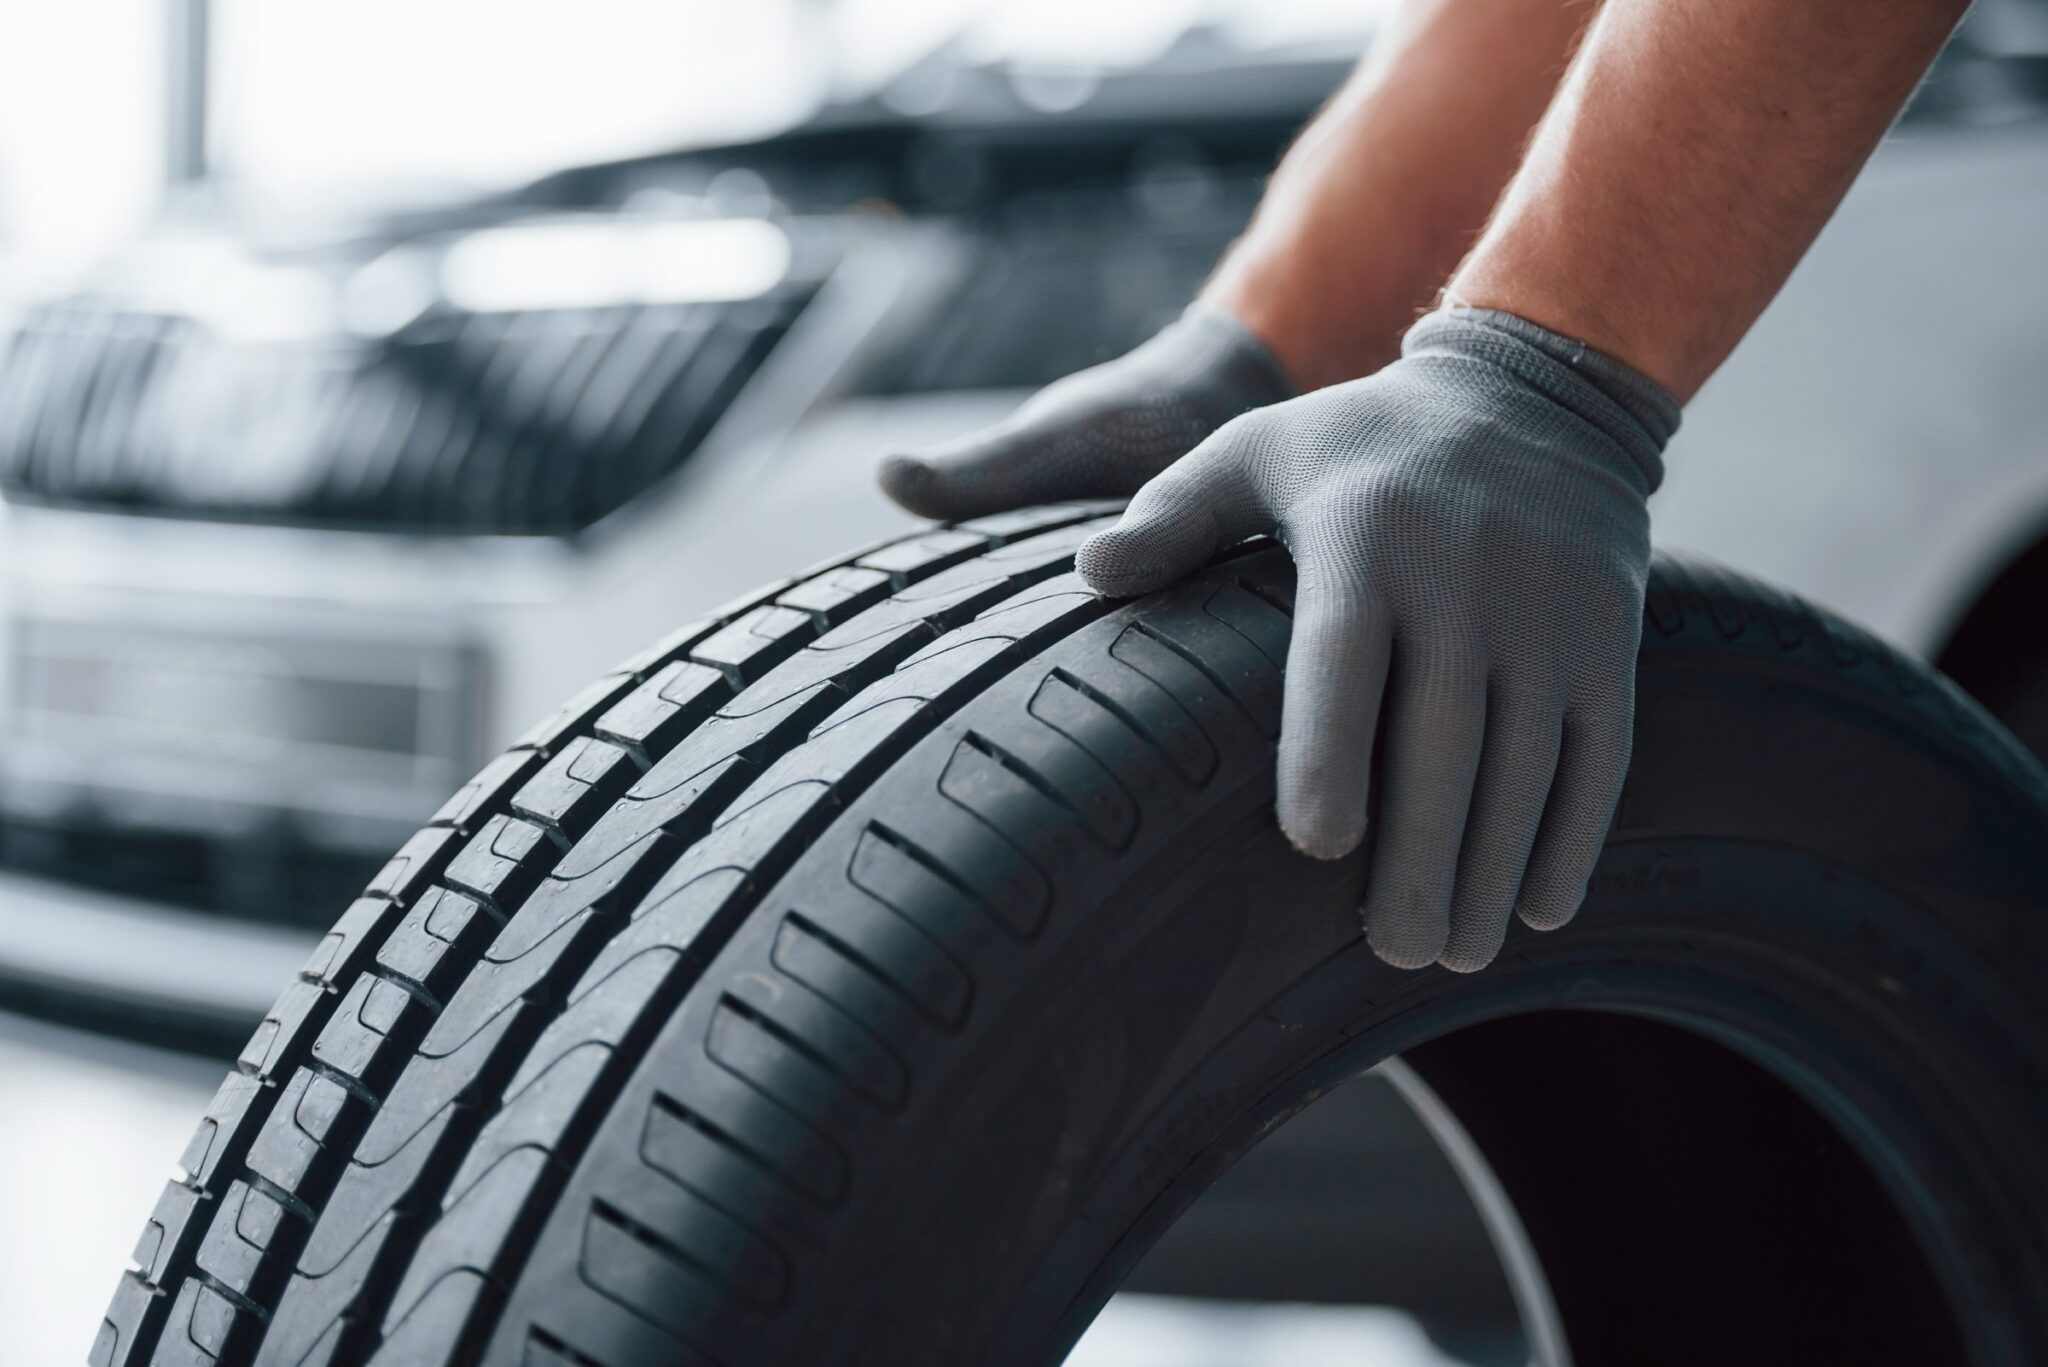 Guia para Escolher o Pneu Adequado: Como selecionar o pneu certo para o seu veículo com base no tamanho, tipo e condições de condução.